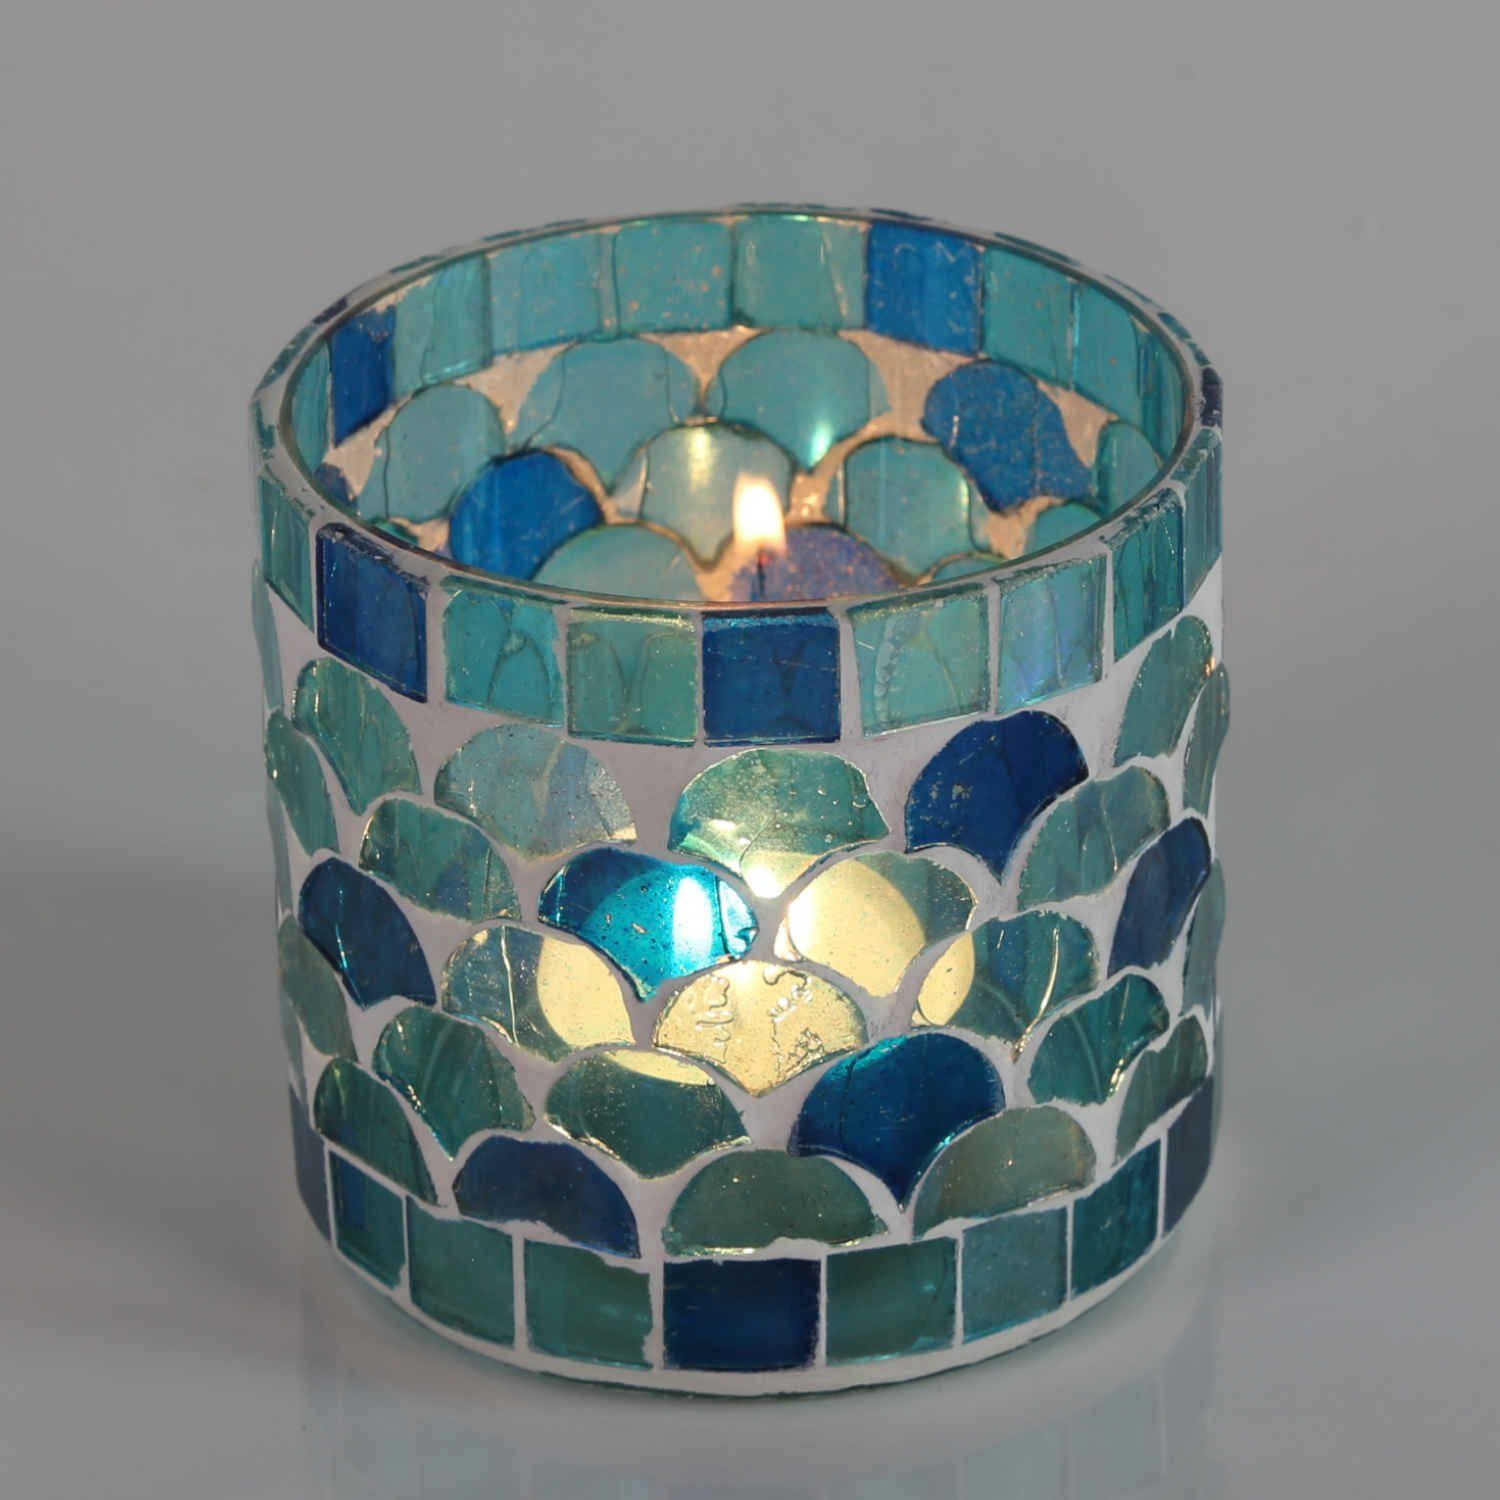 Casa Moro Windlicht Orientalisches Mosaik Windlicht Athen Hellblau aus Glas handgefertigt (Boho Chic Teelichthalter Kerzenständer Kerzenhalter, Glaswindlicht in den Größen S und M oder als 2er Set bestellbar), Kunsthandwerk pur für einfach schöner wohnen